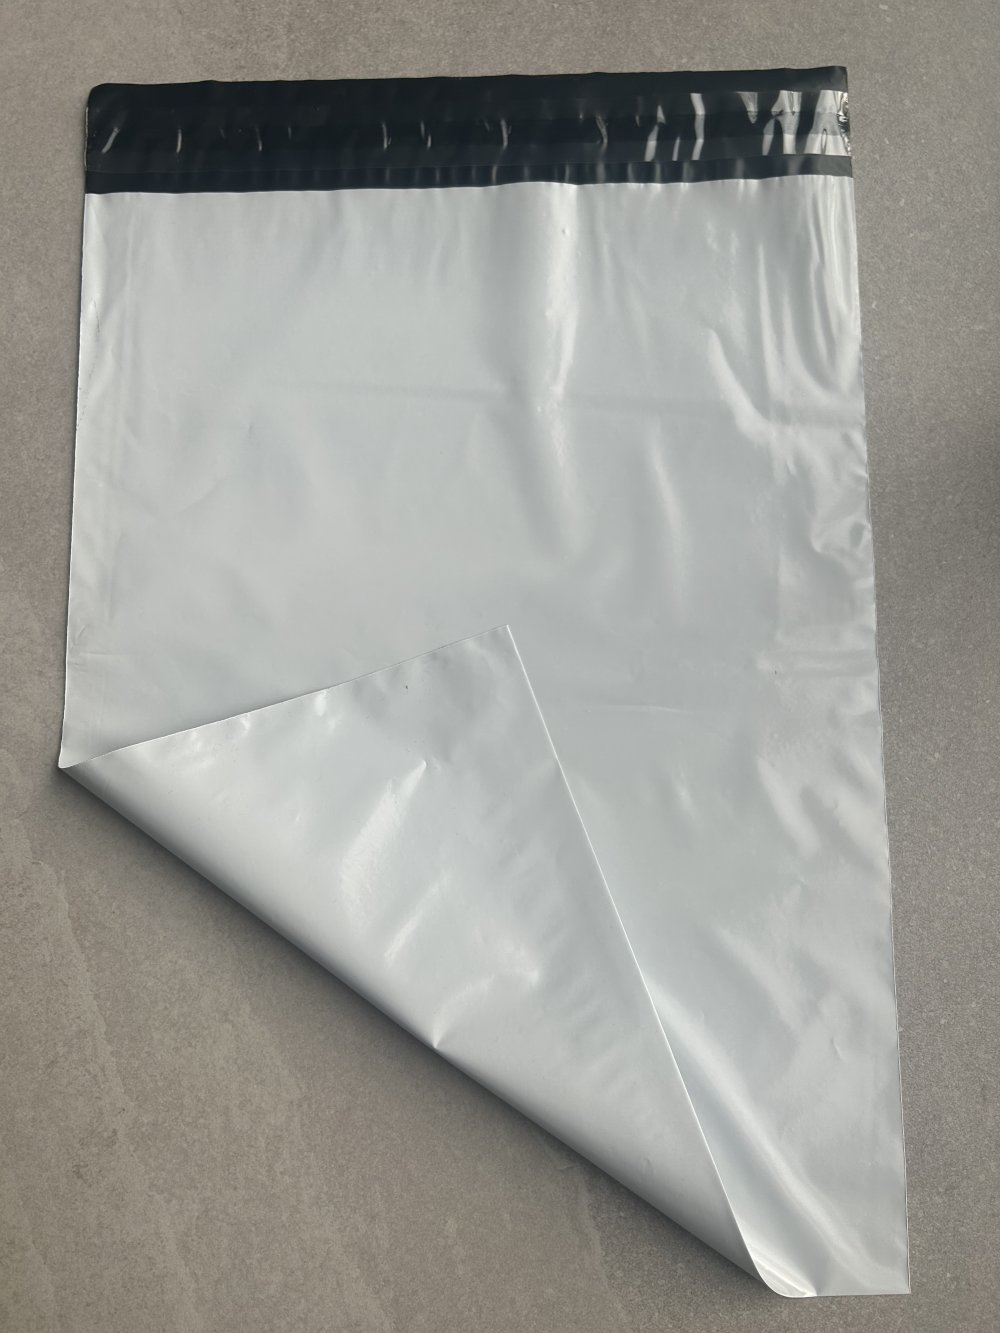 50 Emballage Colis Vinted, Enveloppes Plastiques d'expédition